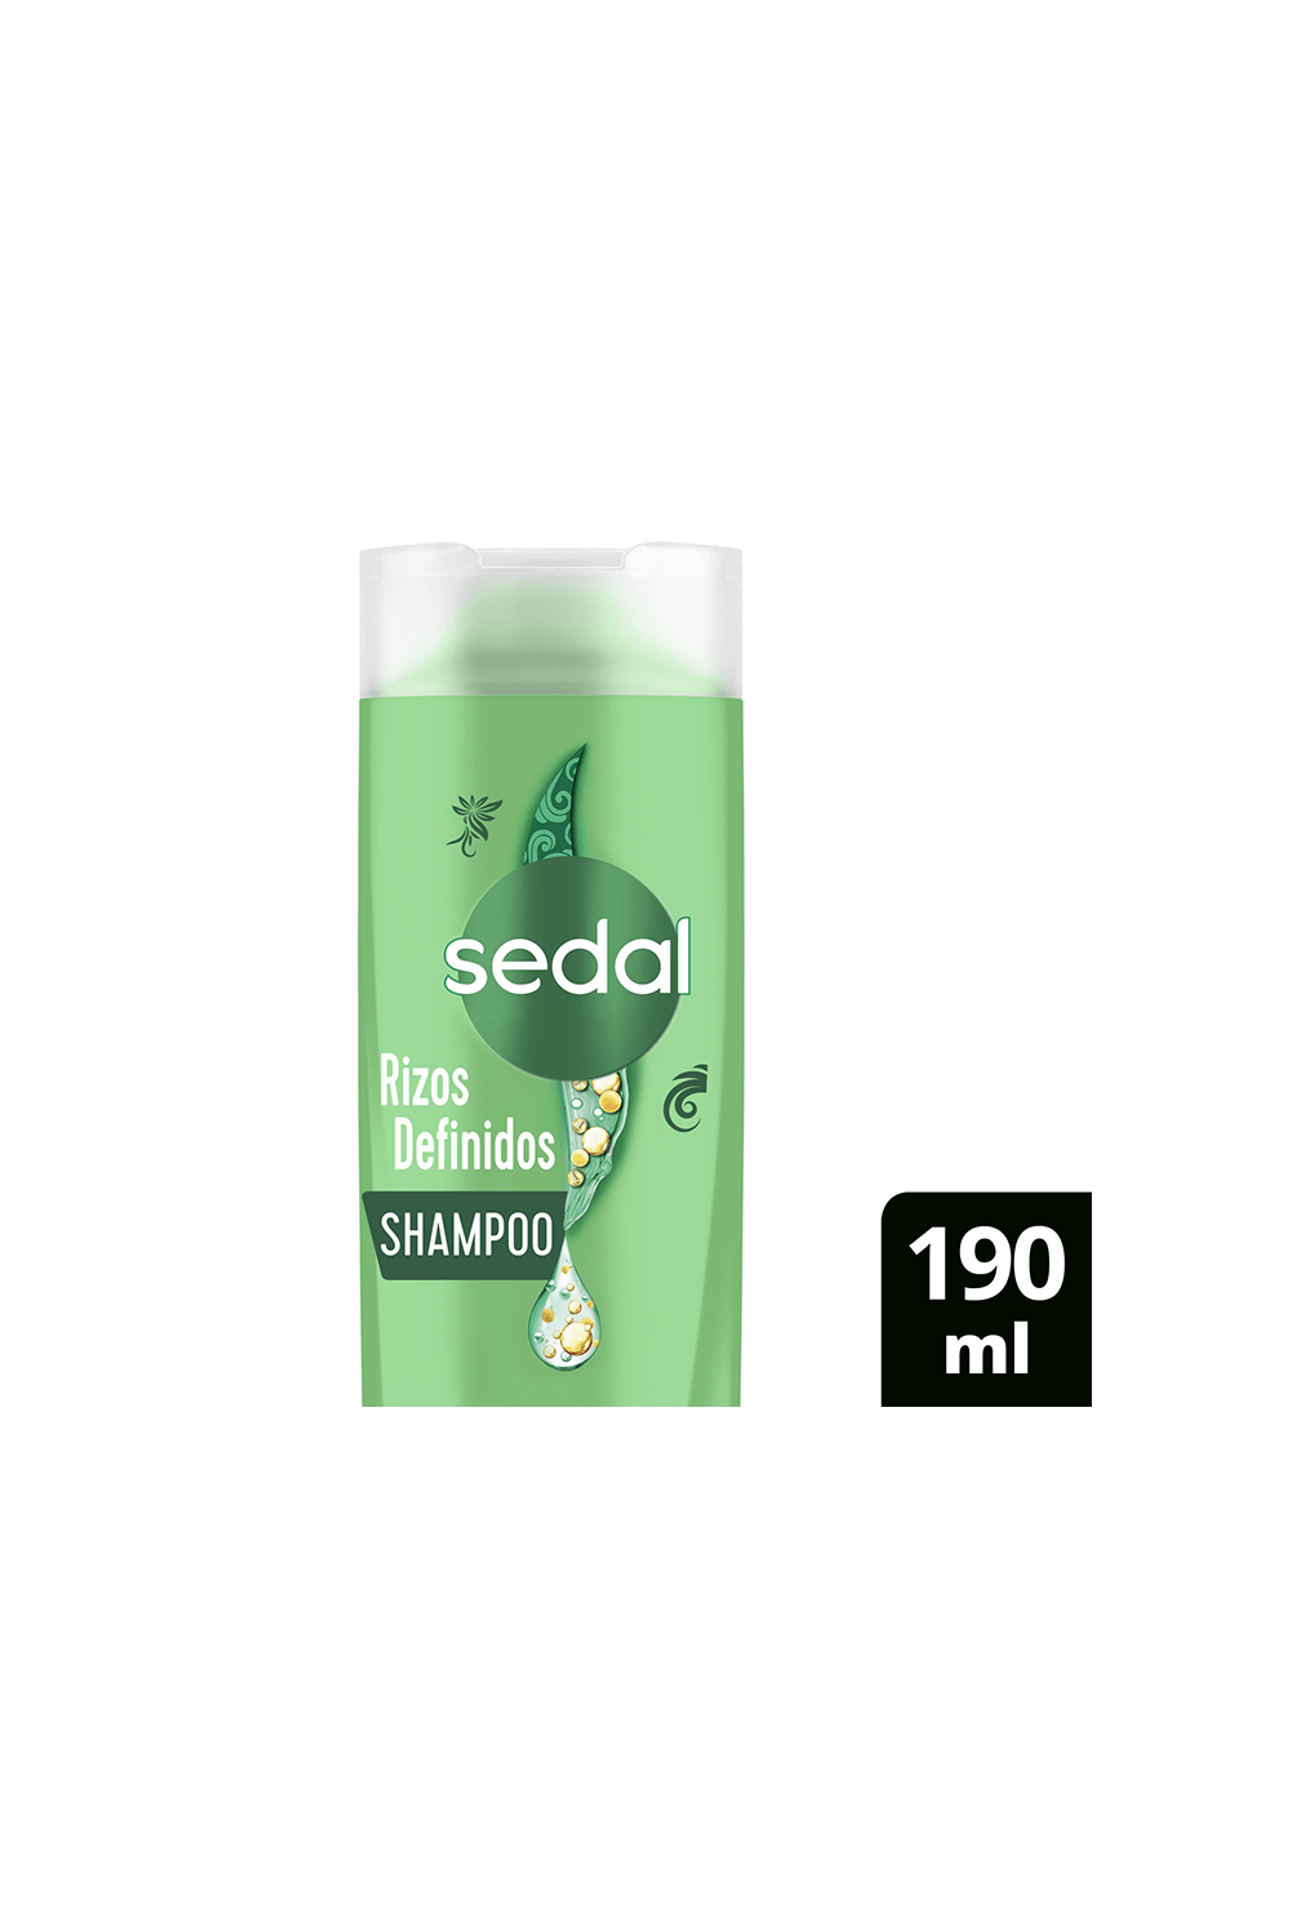 Sedal-Shampoo-Sedal-Rizos-Definidos-x-190ml-7791293045696_img1